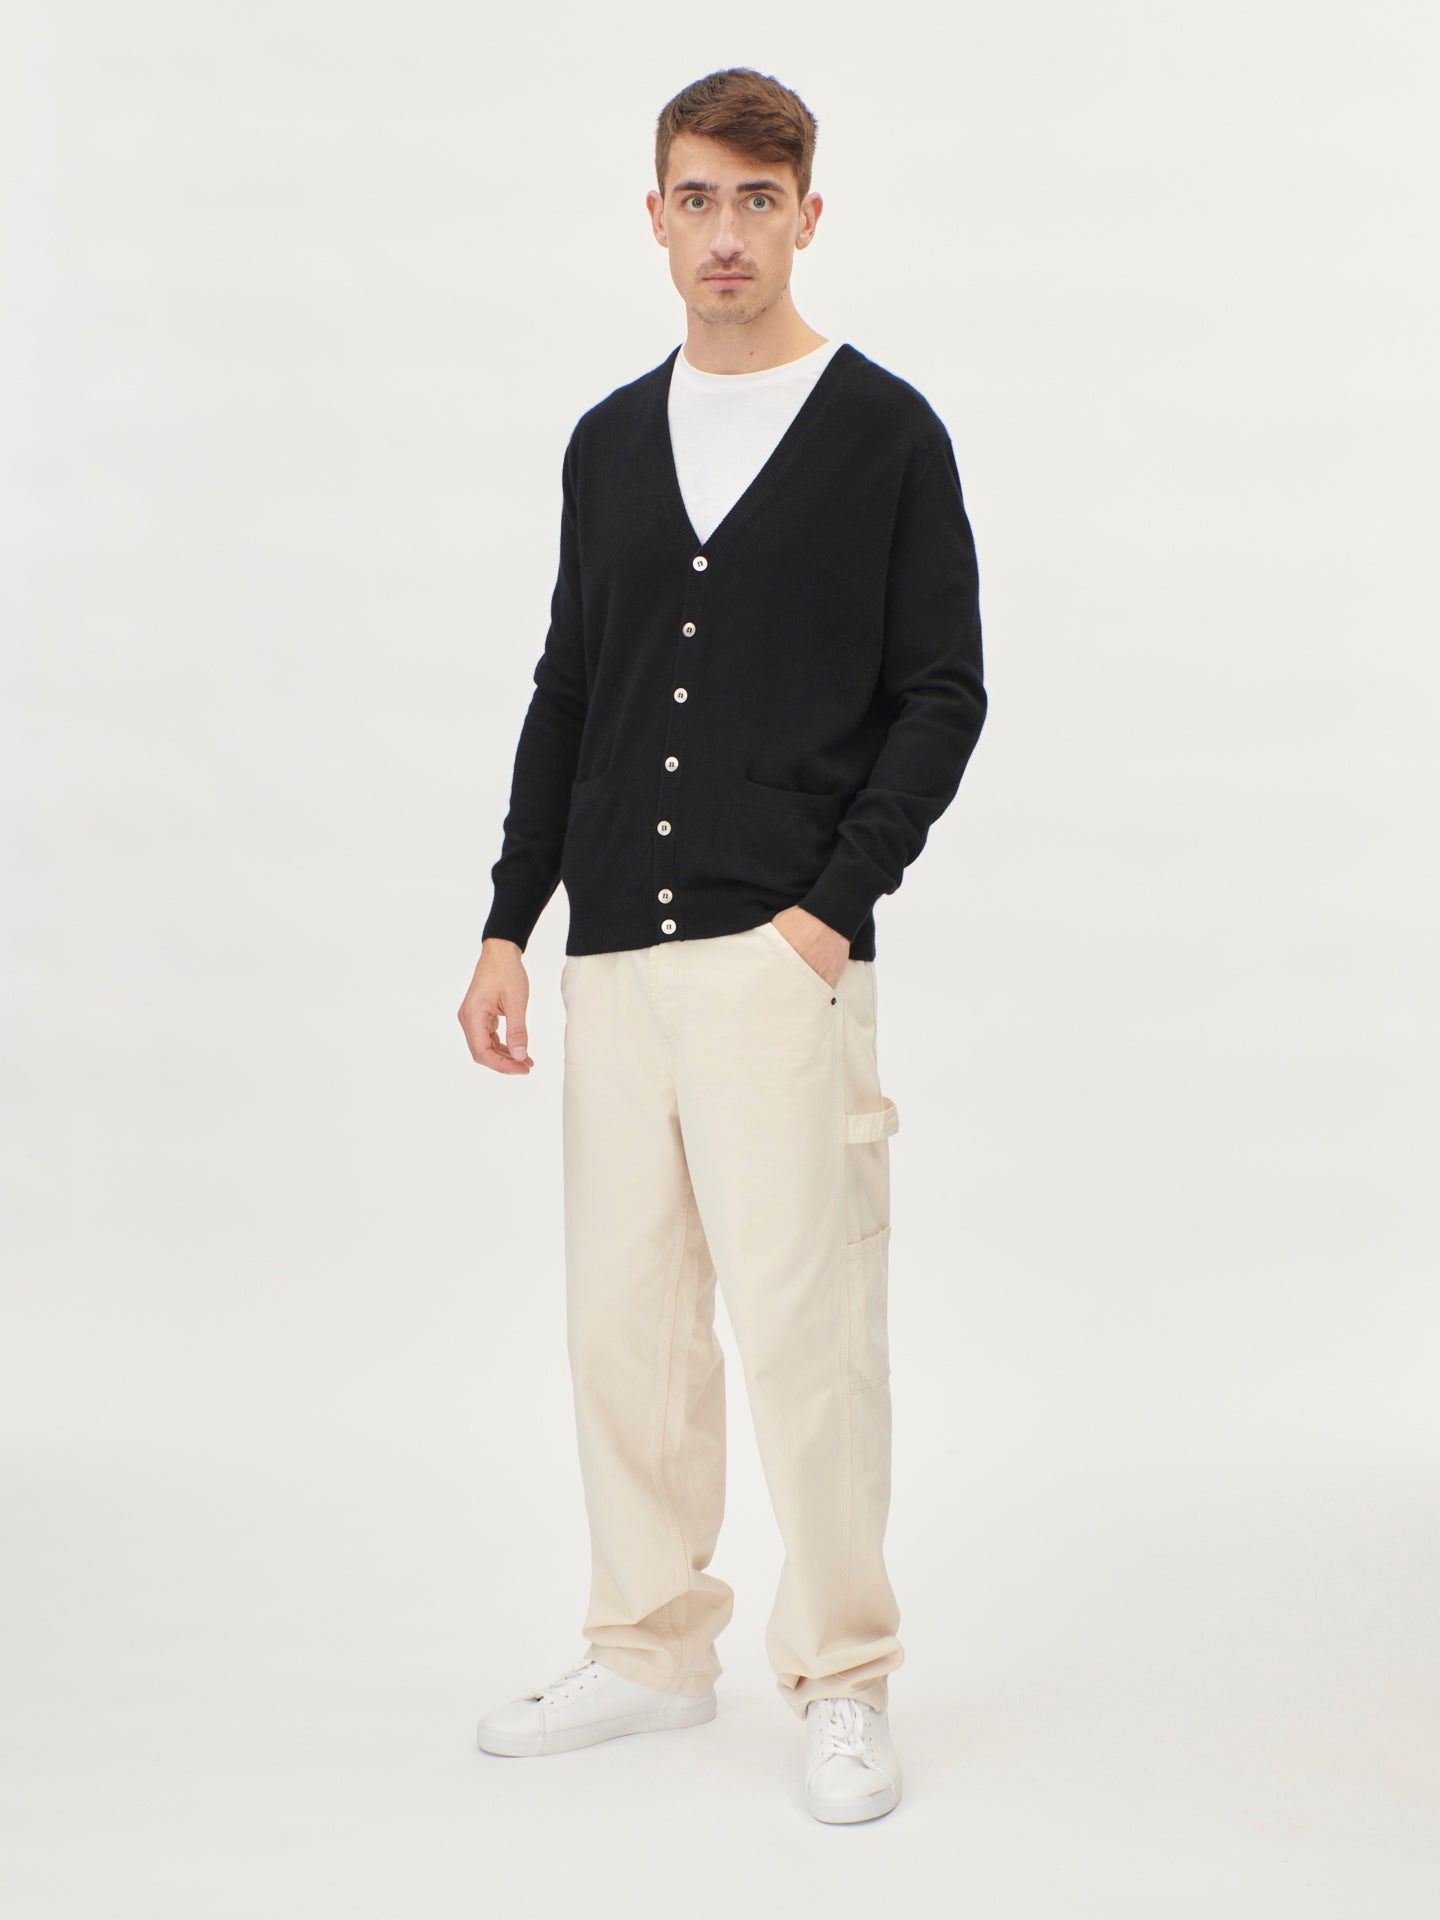 Men's Cashmere V-neck Cardigan Black - Gobi Cashmere